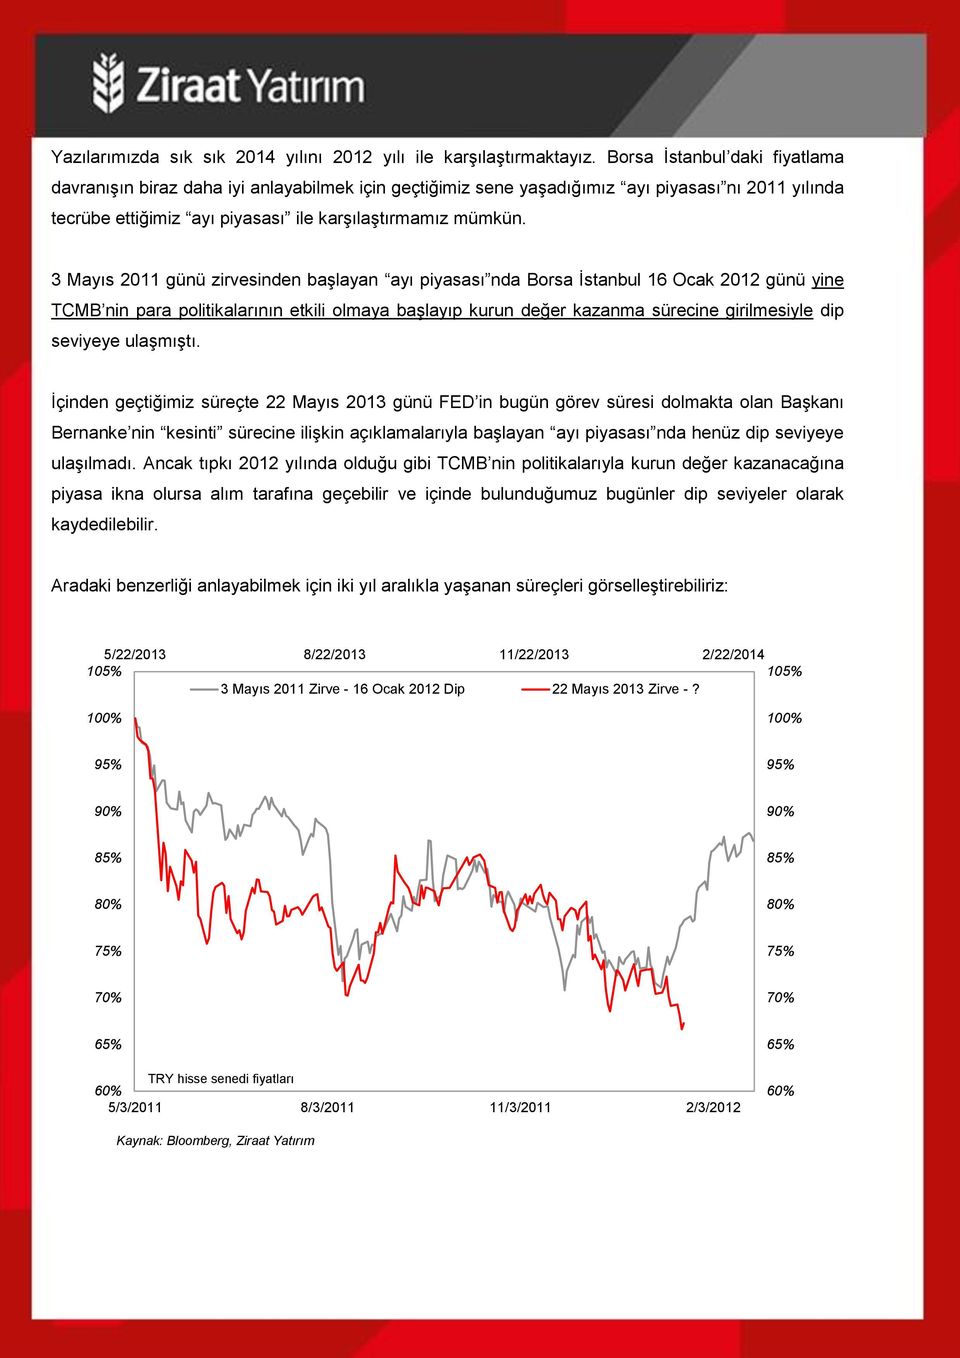 3 Mayıs 2011 günü zirvesinden başlayan ayı piyasası nda Borsa İstanbul 16 Ocak 2012 günü yine TCMB nin para politikalarının etkili olmaya başlayıp kurun değer kazanma sürecine girilmesiyle dip